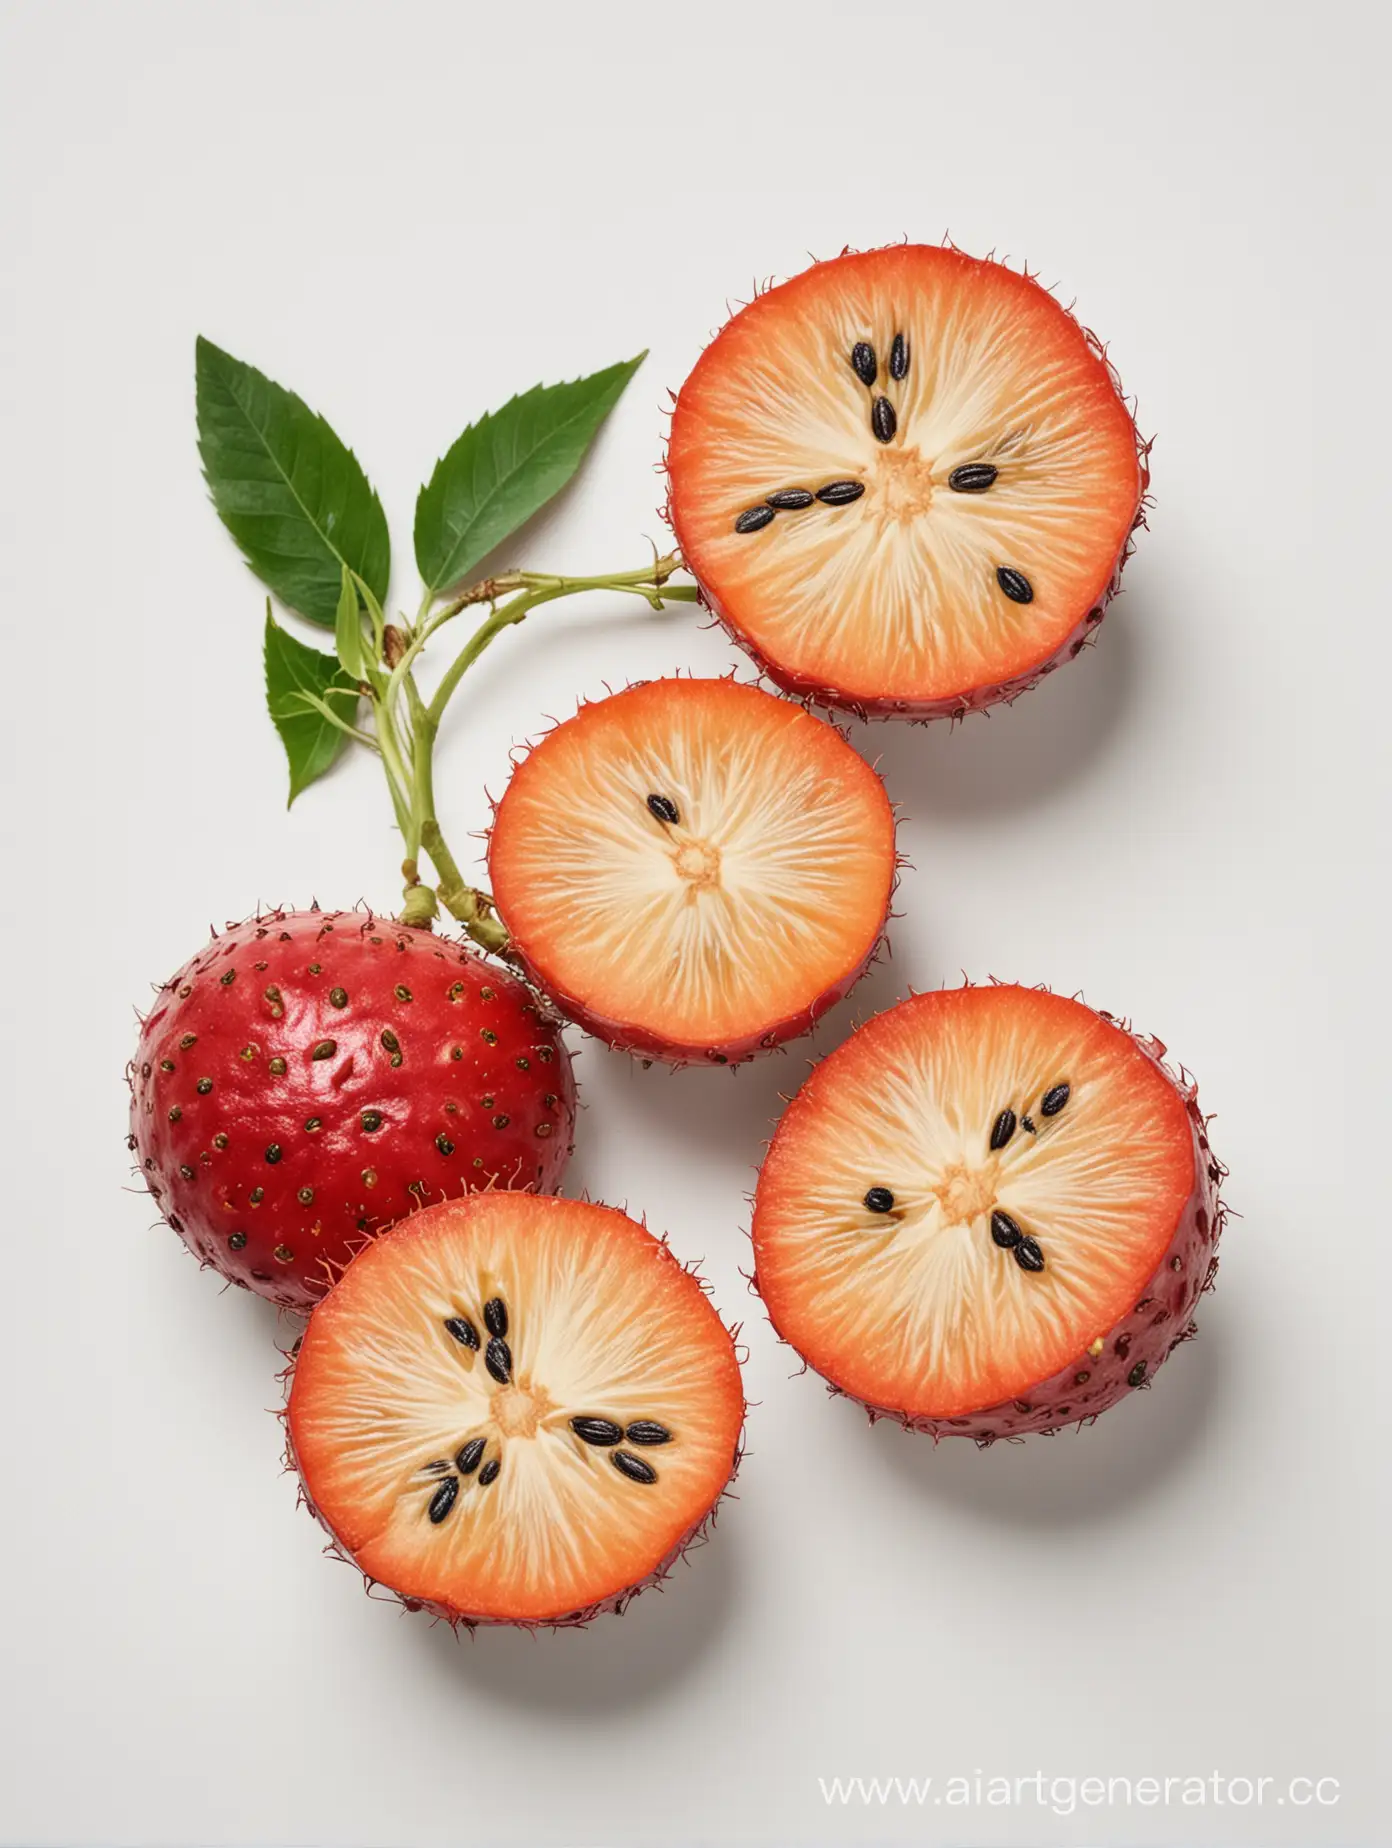 akebi-fruit on white background